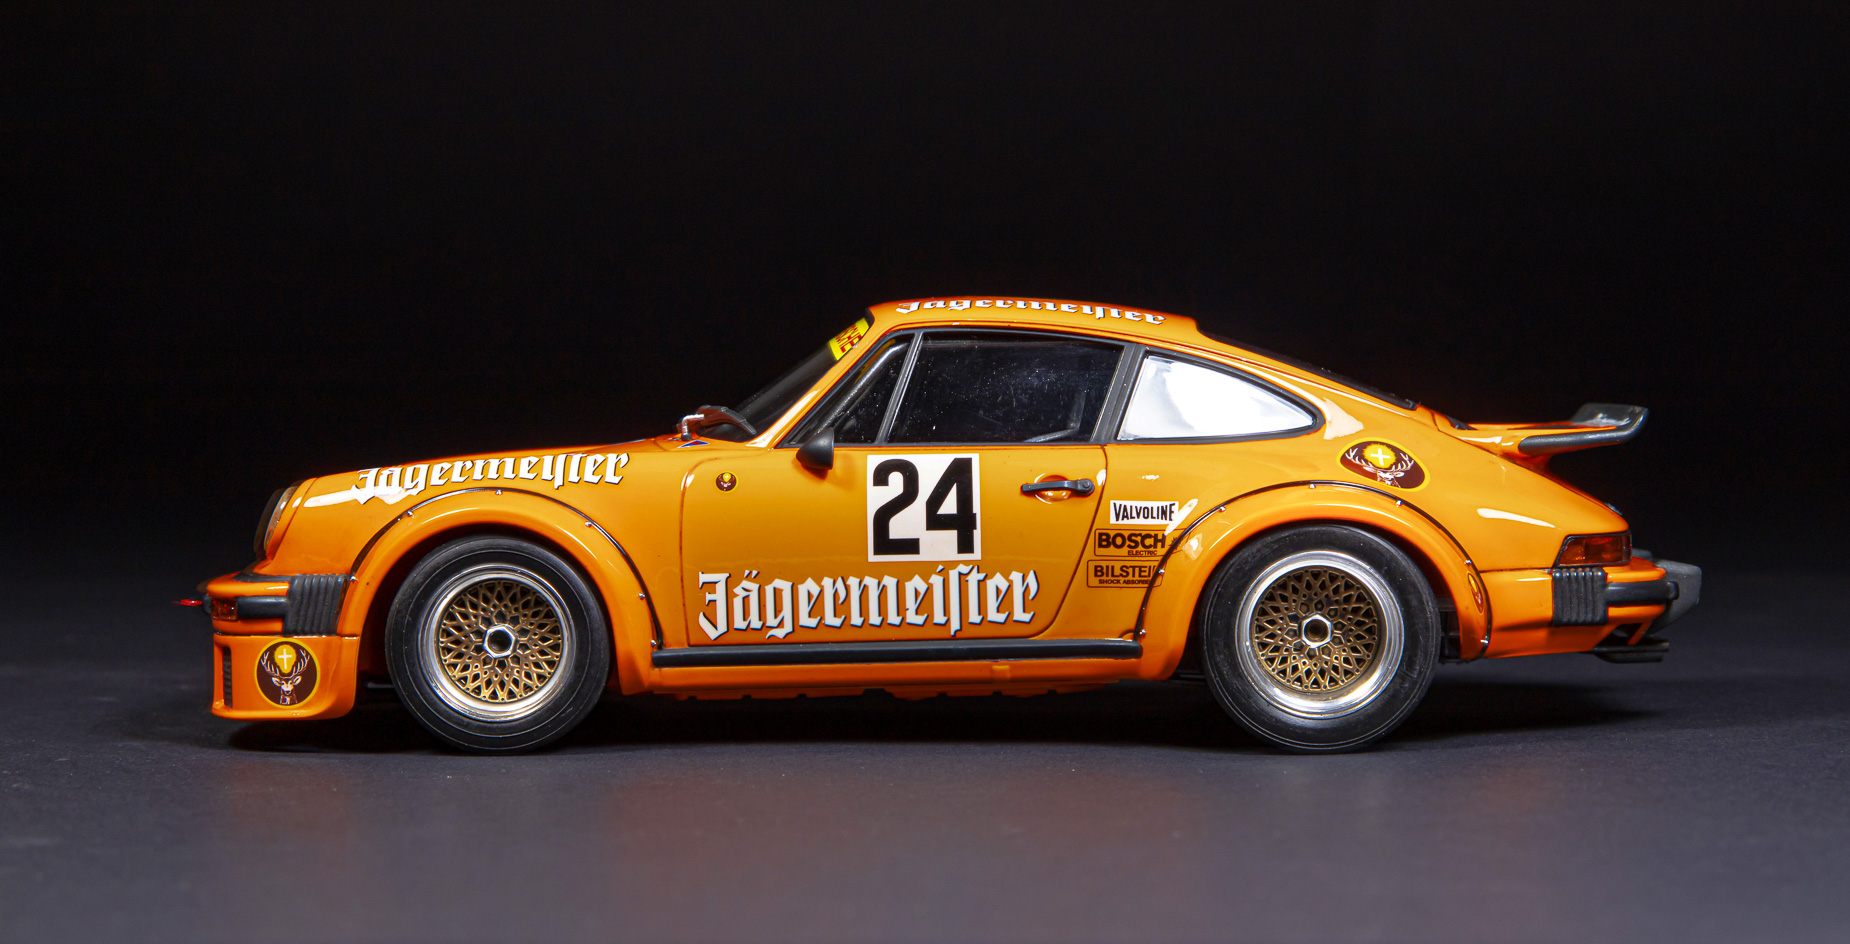 Porsche_05.jpg